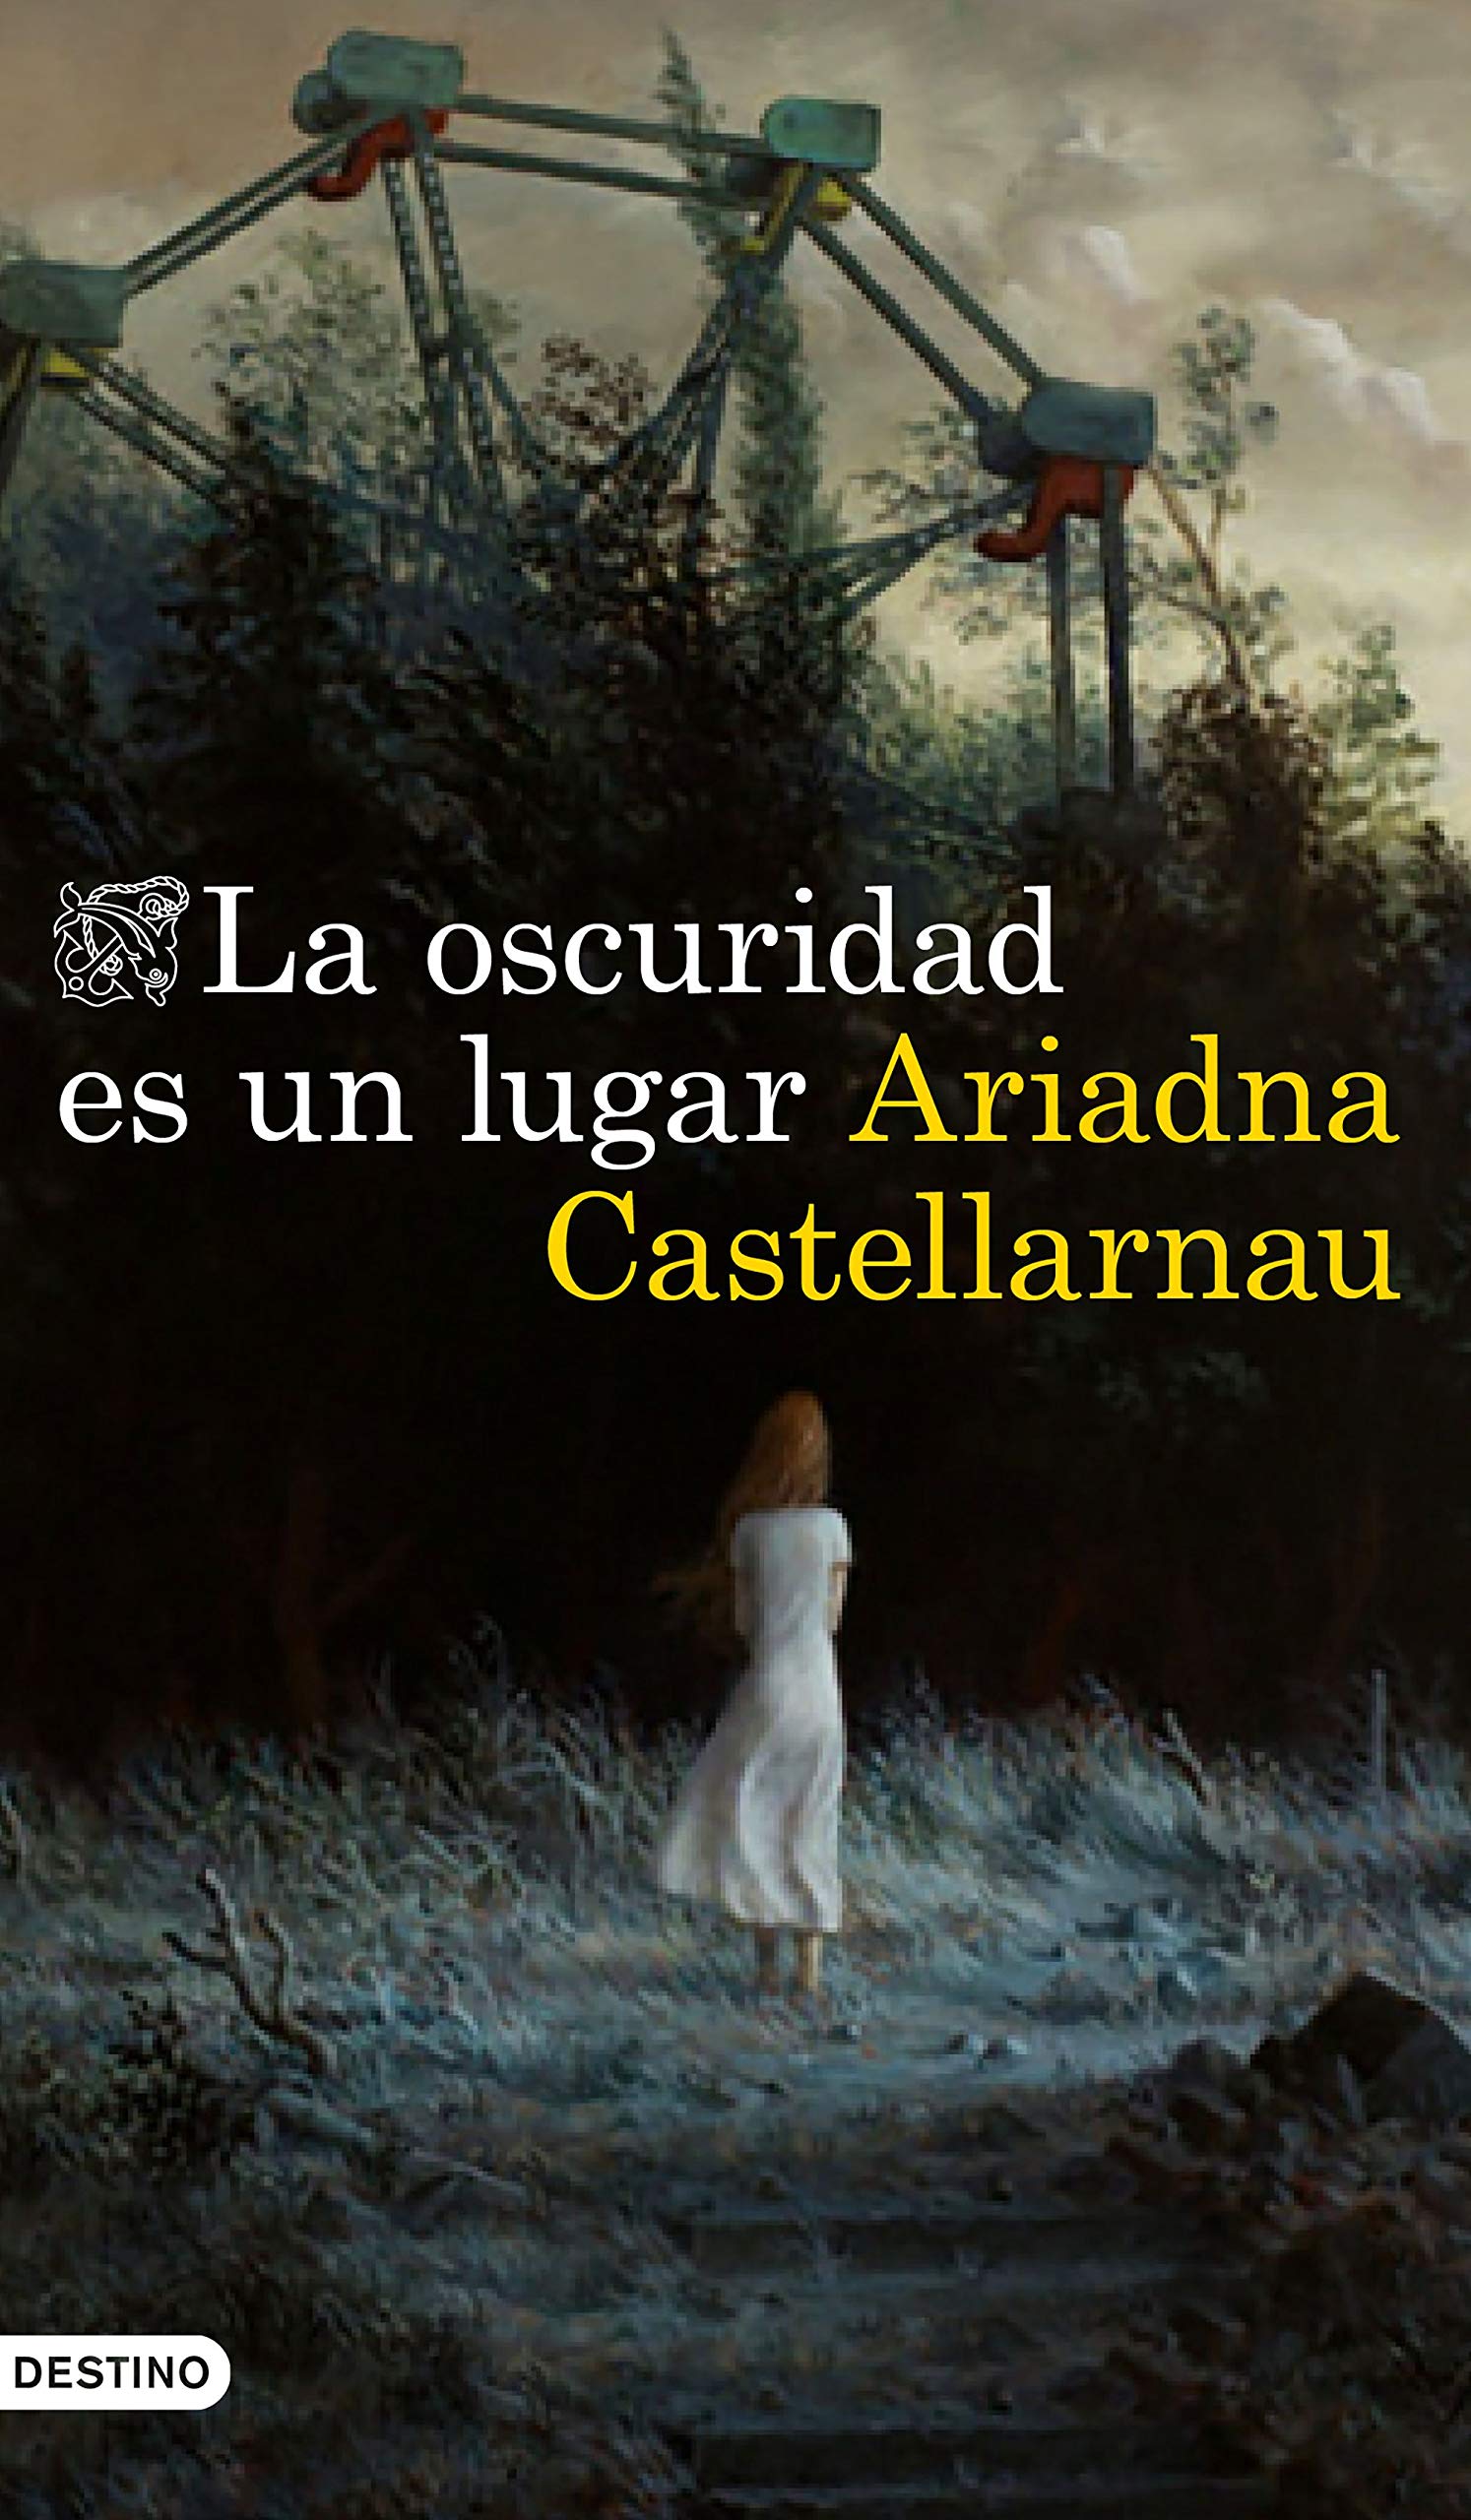 La oscuridad es un lugar, un cuento de Ariadna Castellarnau